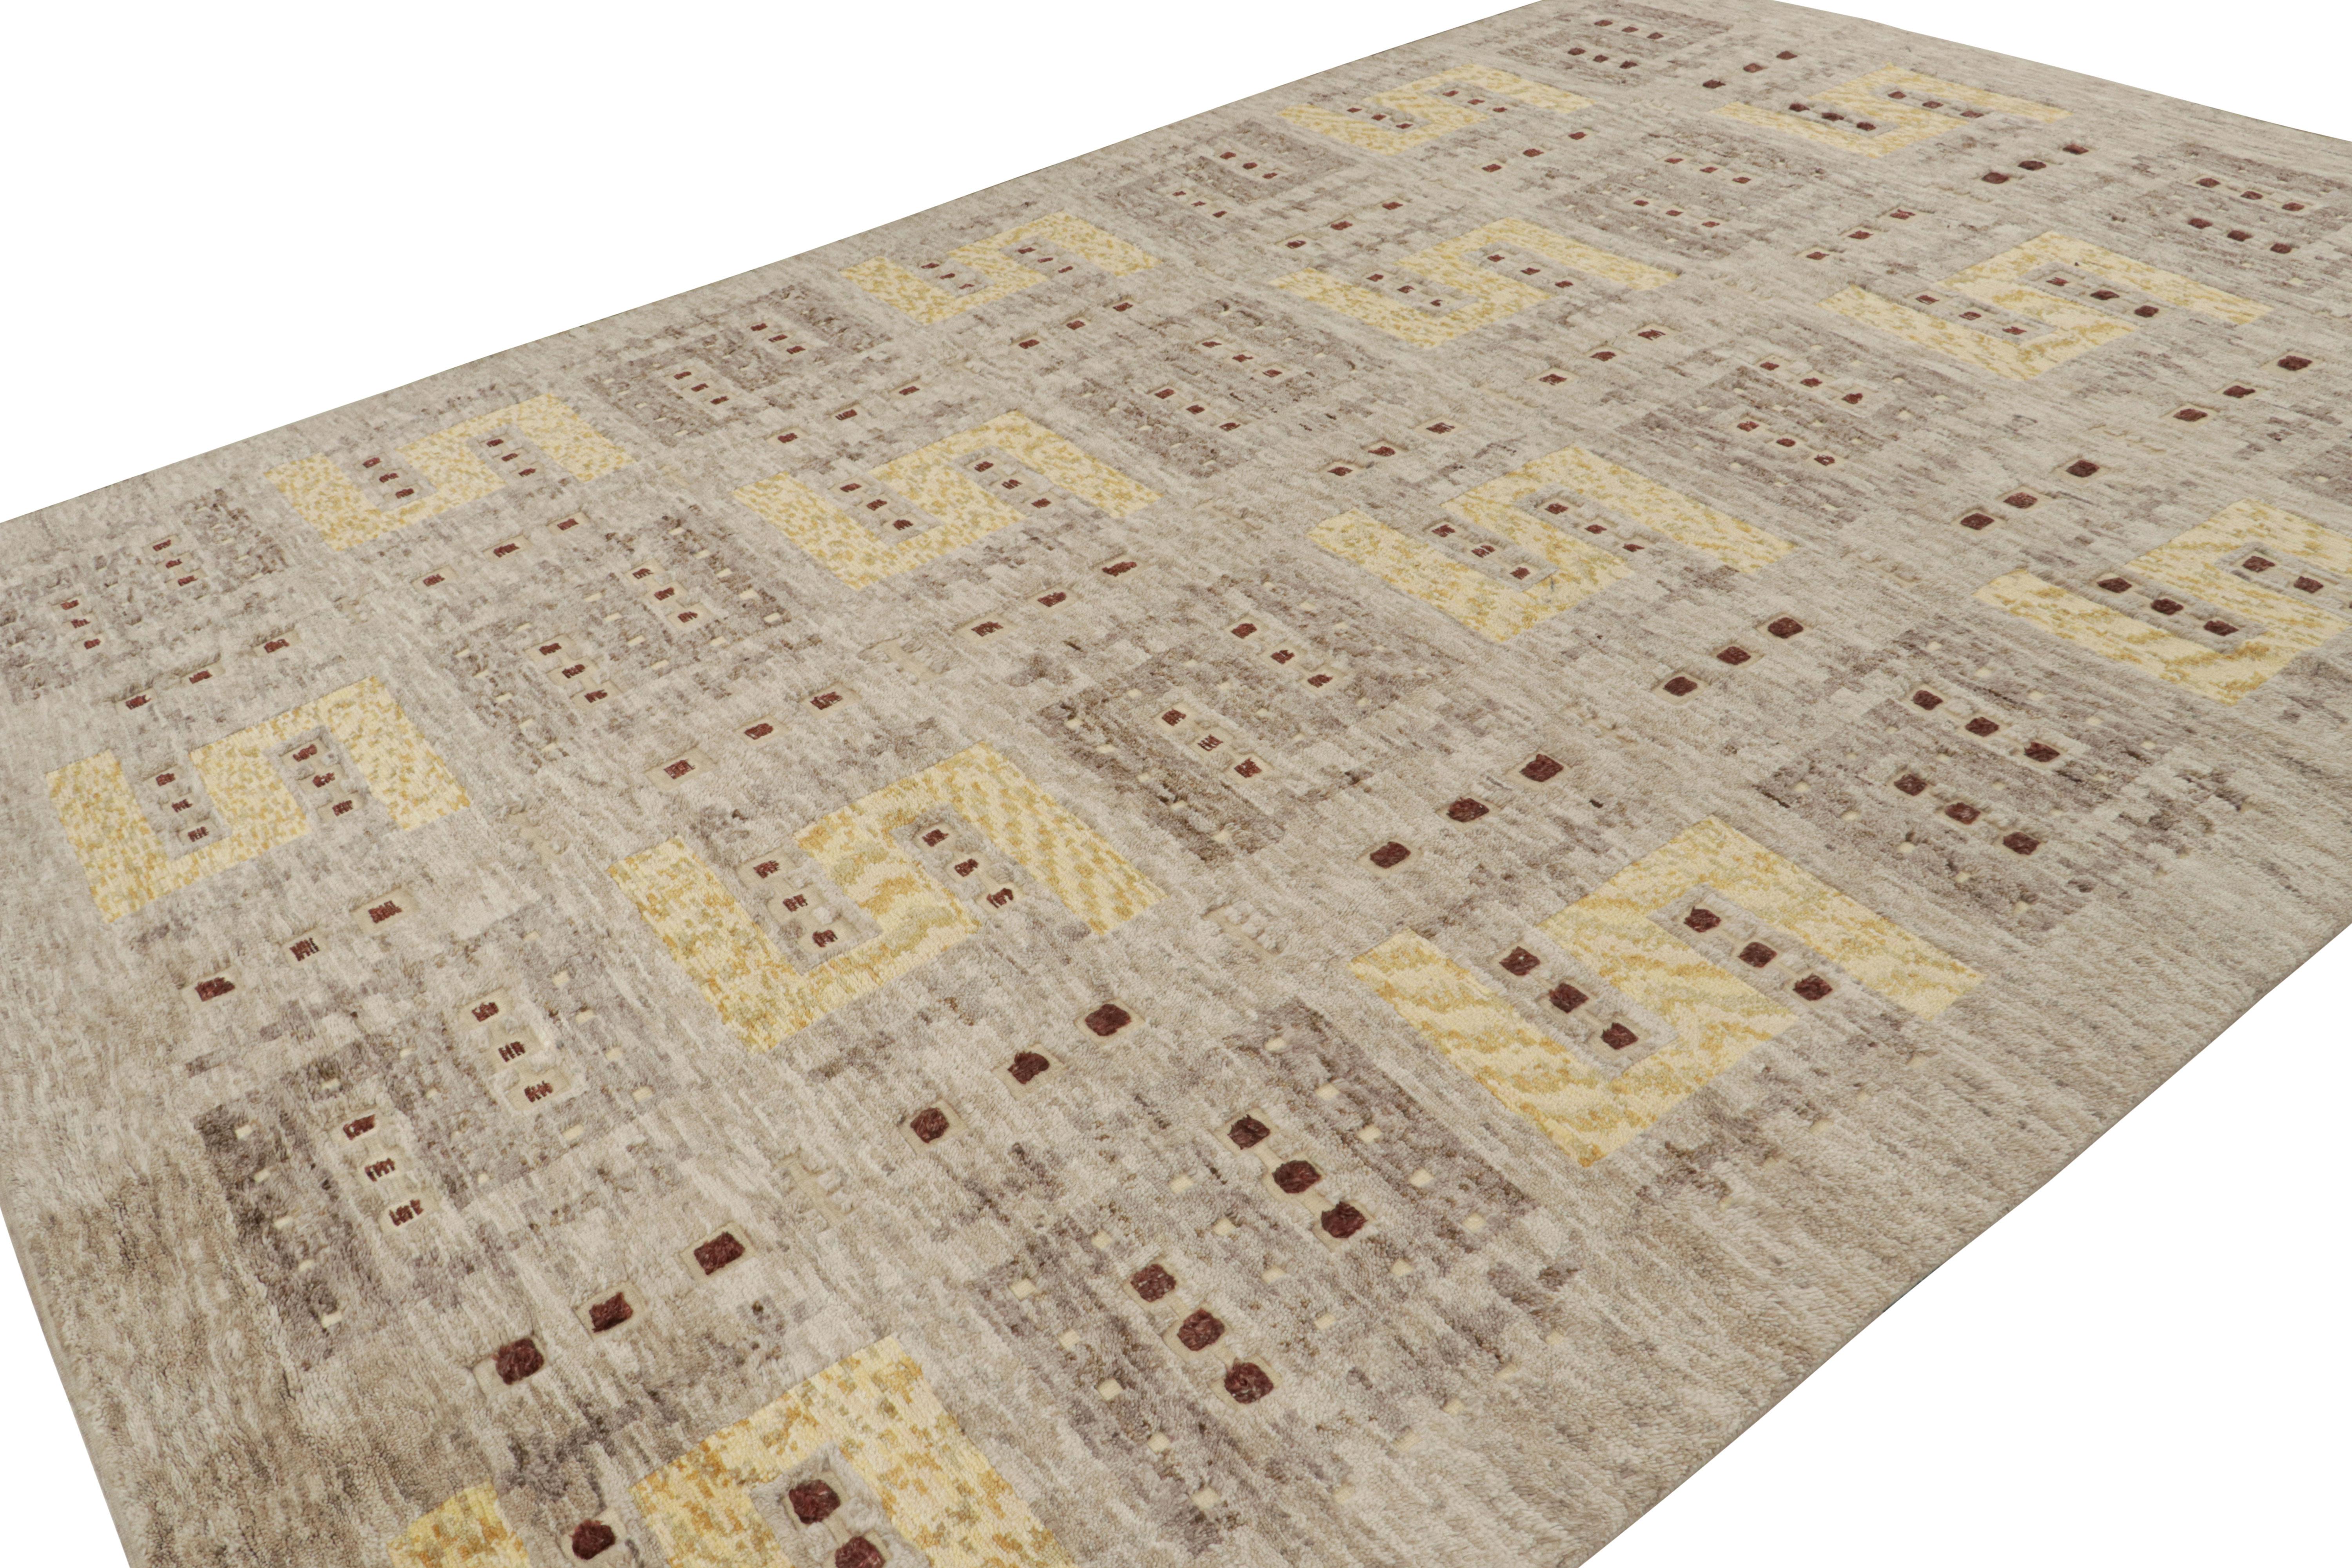 Dieser 10x14 große schwedische Kilim-Teppich gehört zu den Flachgeweben der skandinavischen Teppichkollektion von Rug & Kilim. Das Design des handgeknüpften Wollteppichs ist inspiriert von Rollakhan- und Rya-Teppichen im schwedischen Deco-Stil.